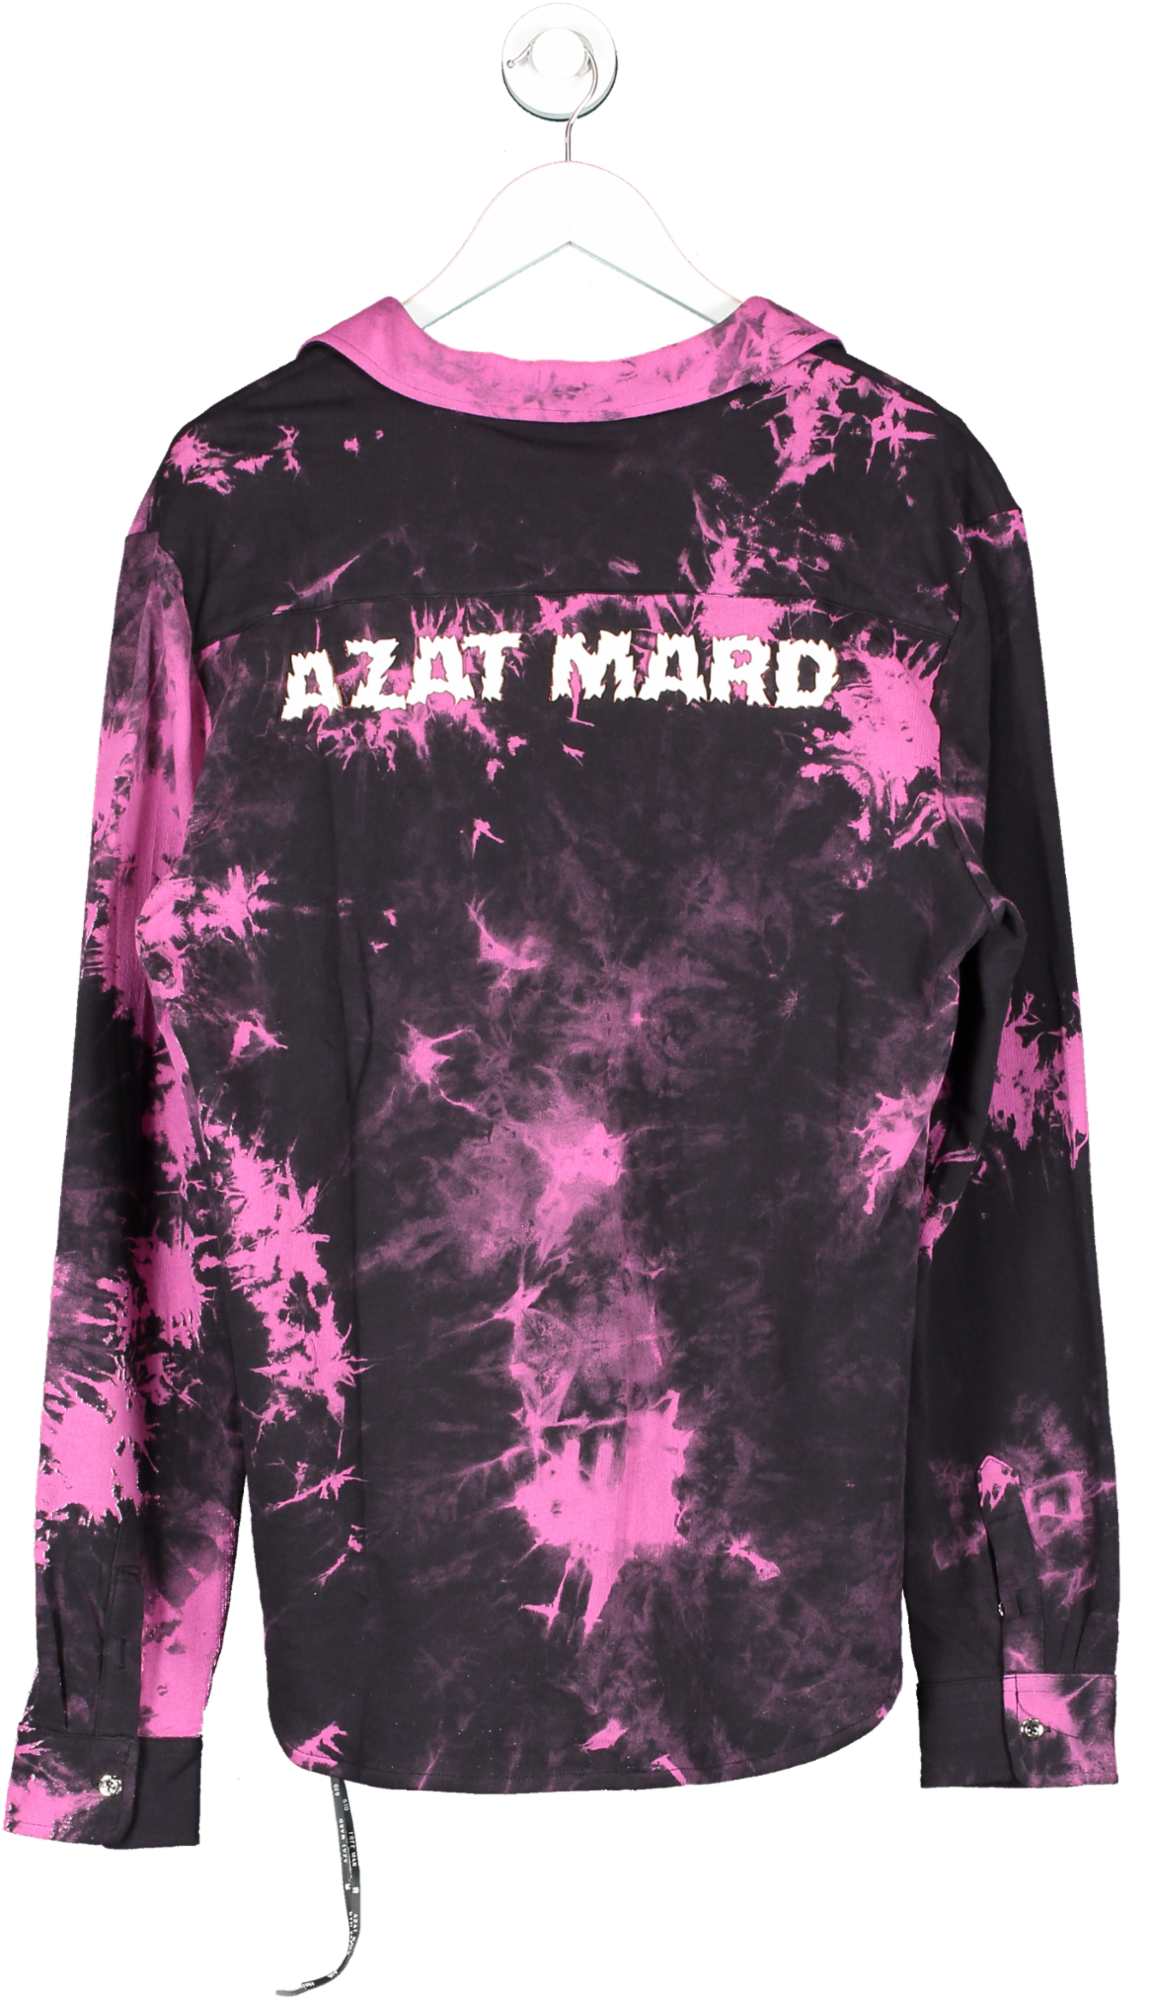 Azat Mard Pink Tie Dye Shirt UK L